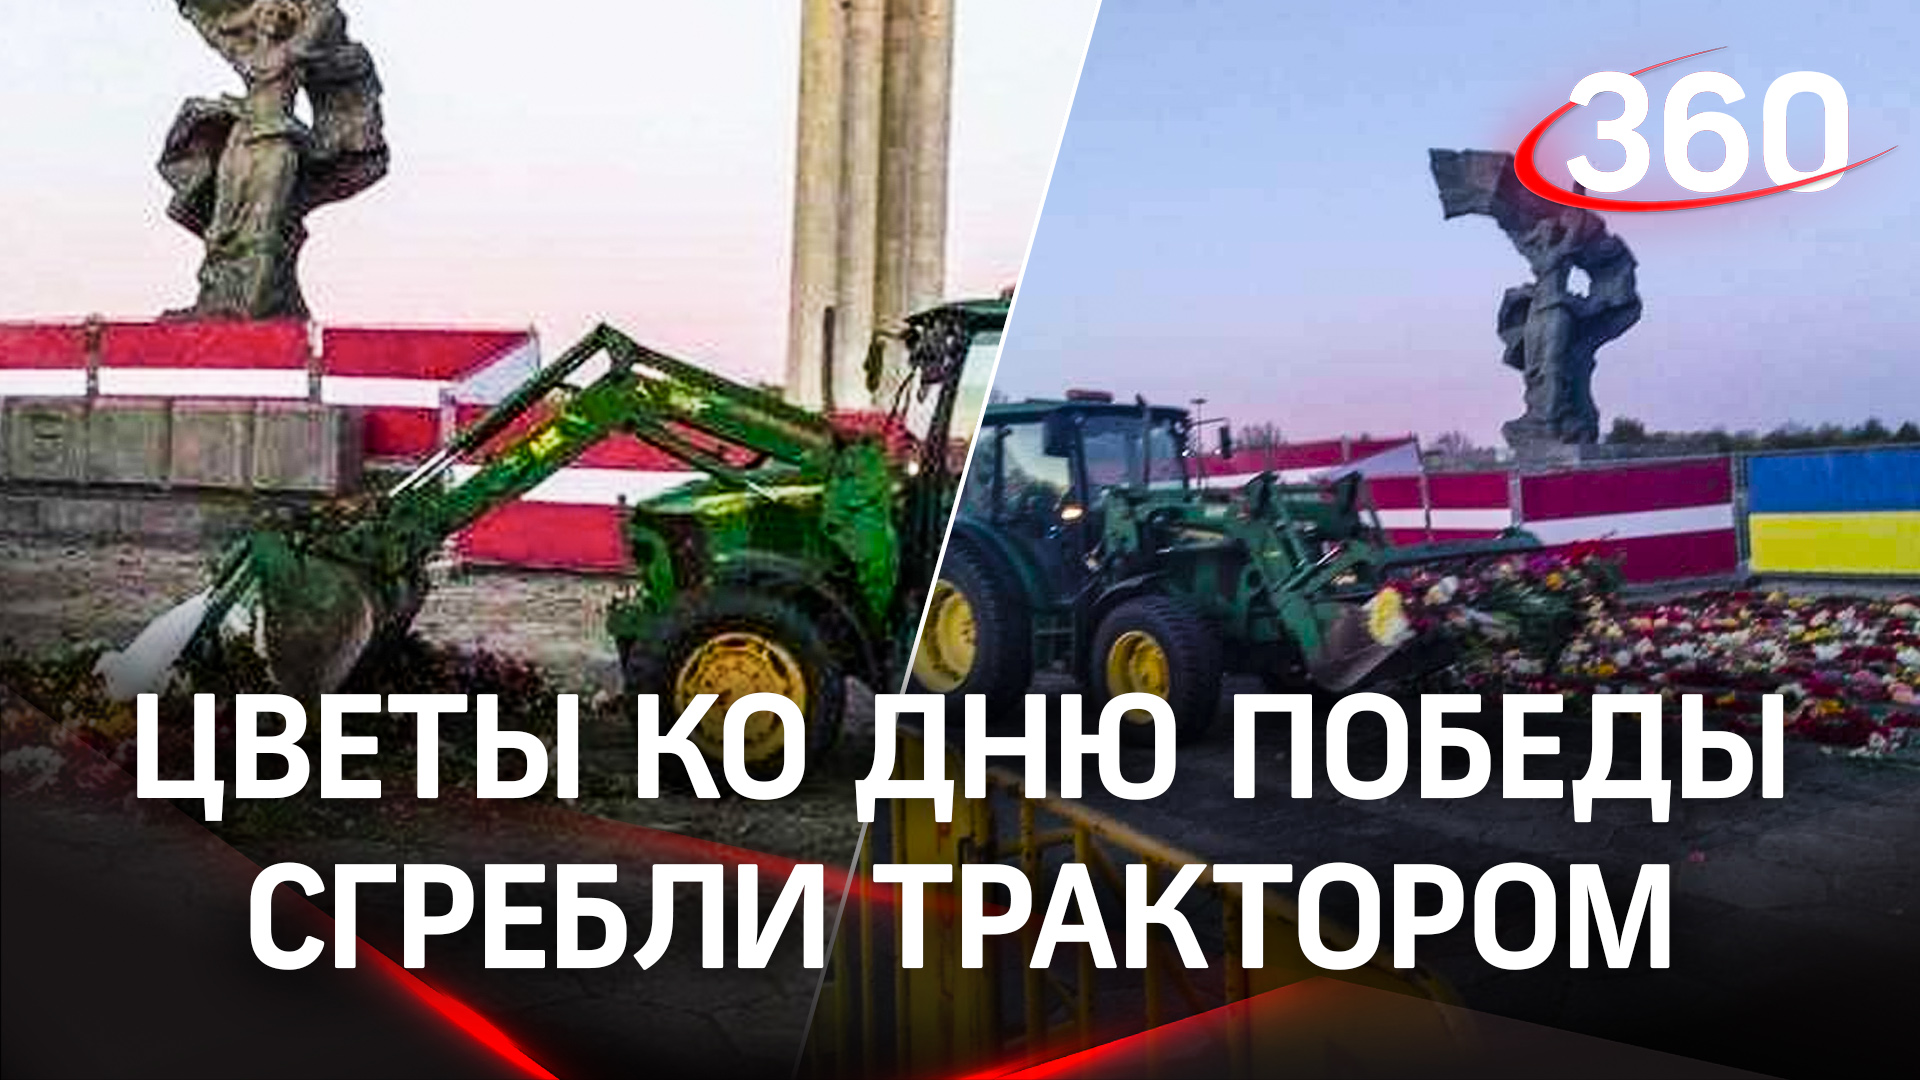 Власти Риги трактором убрали цветы у памятника Освободителям